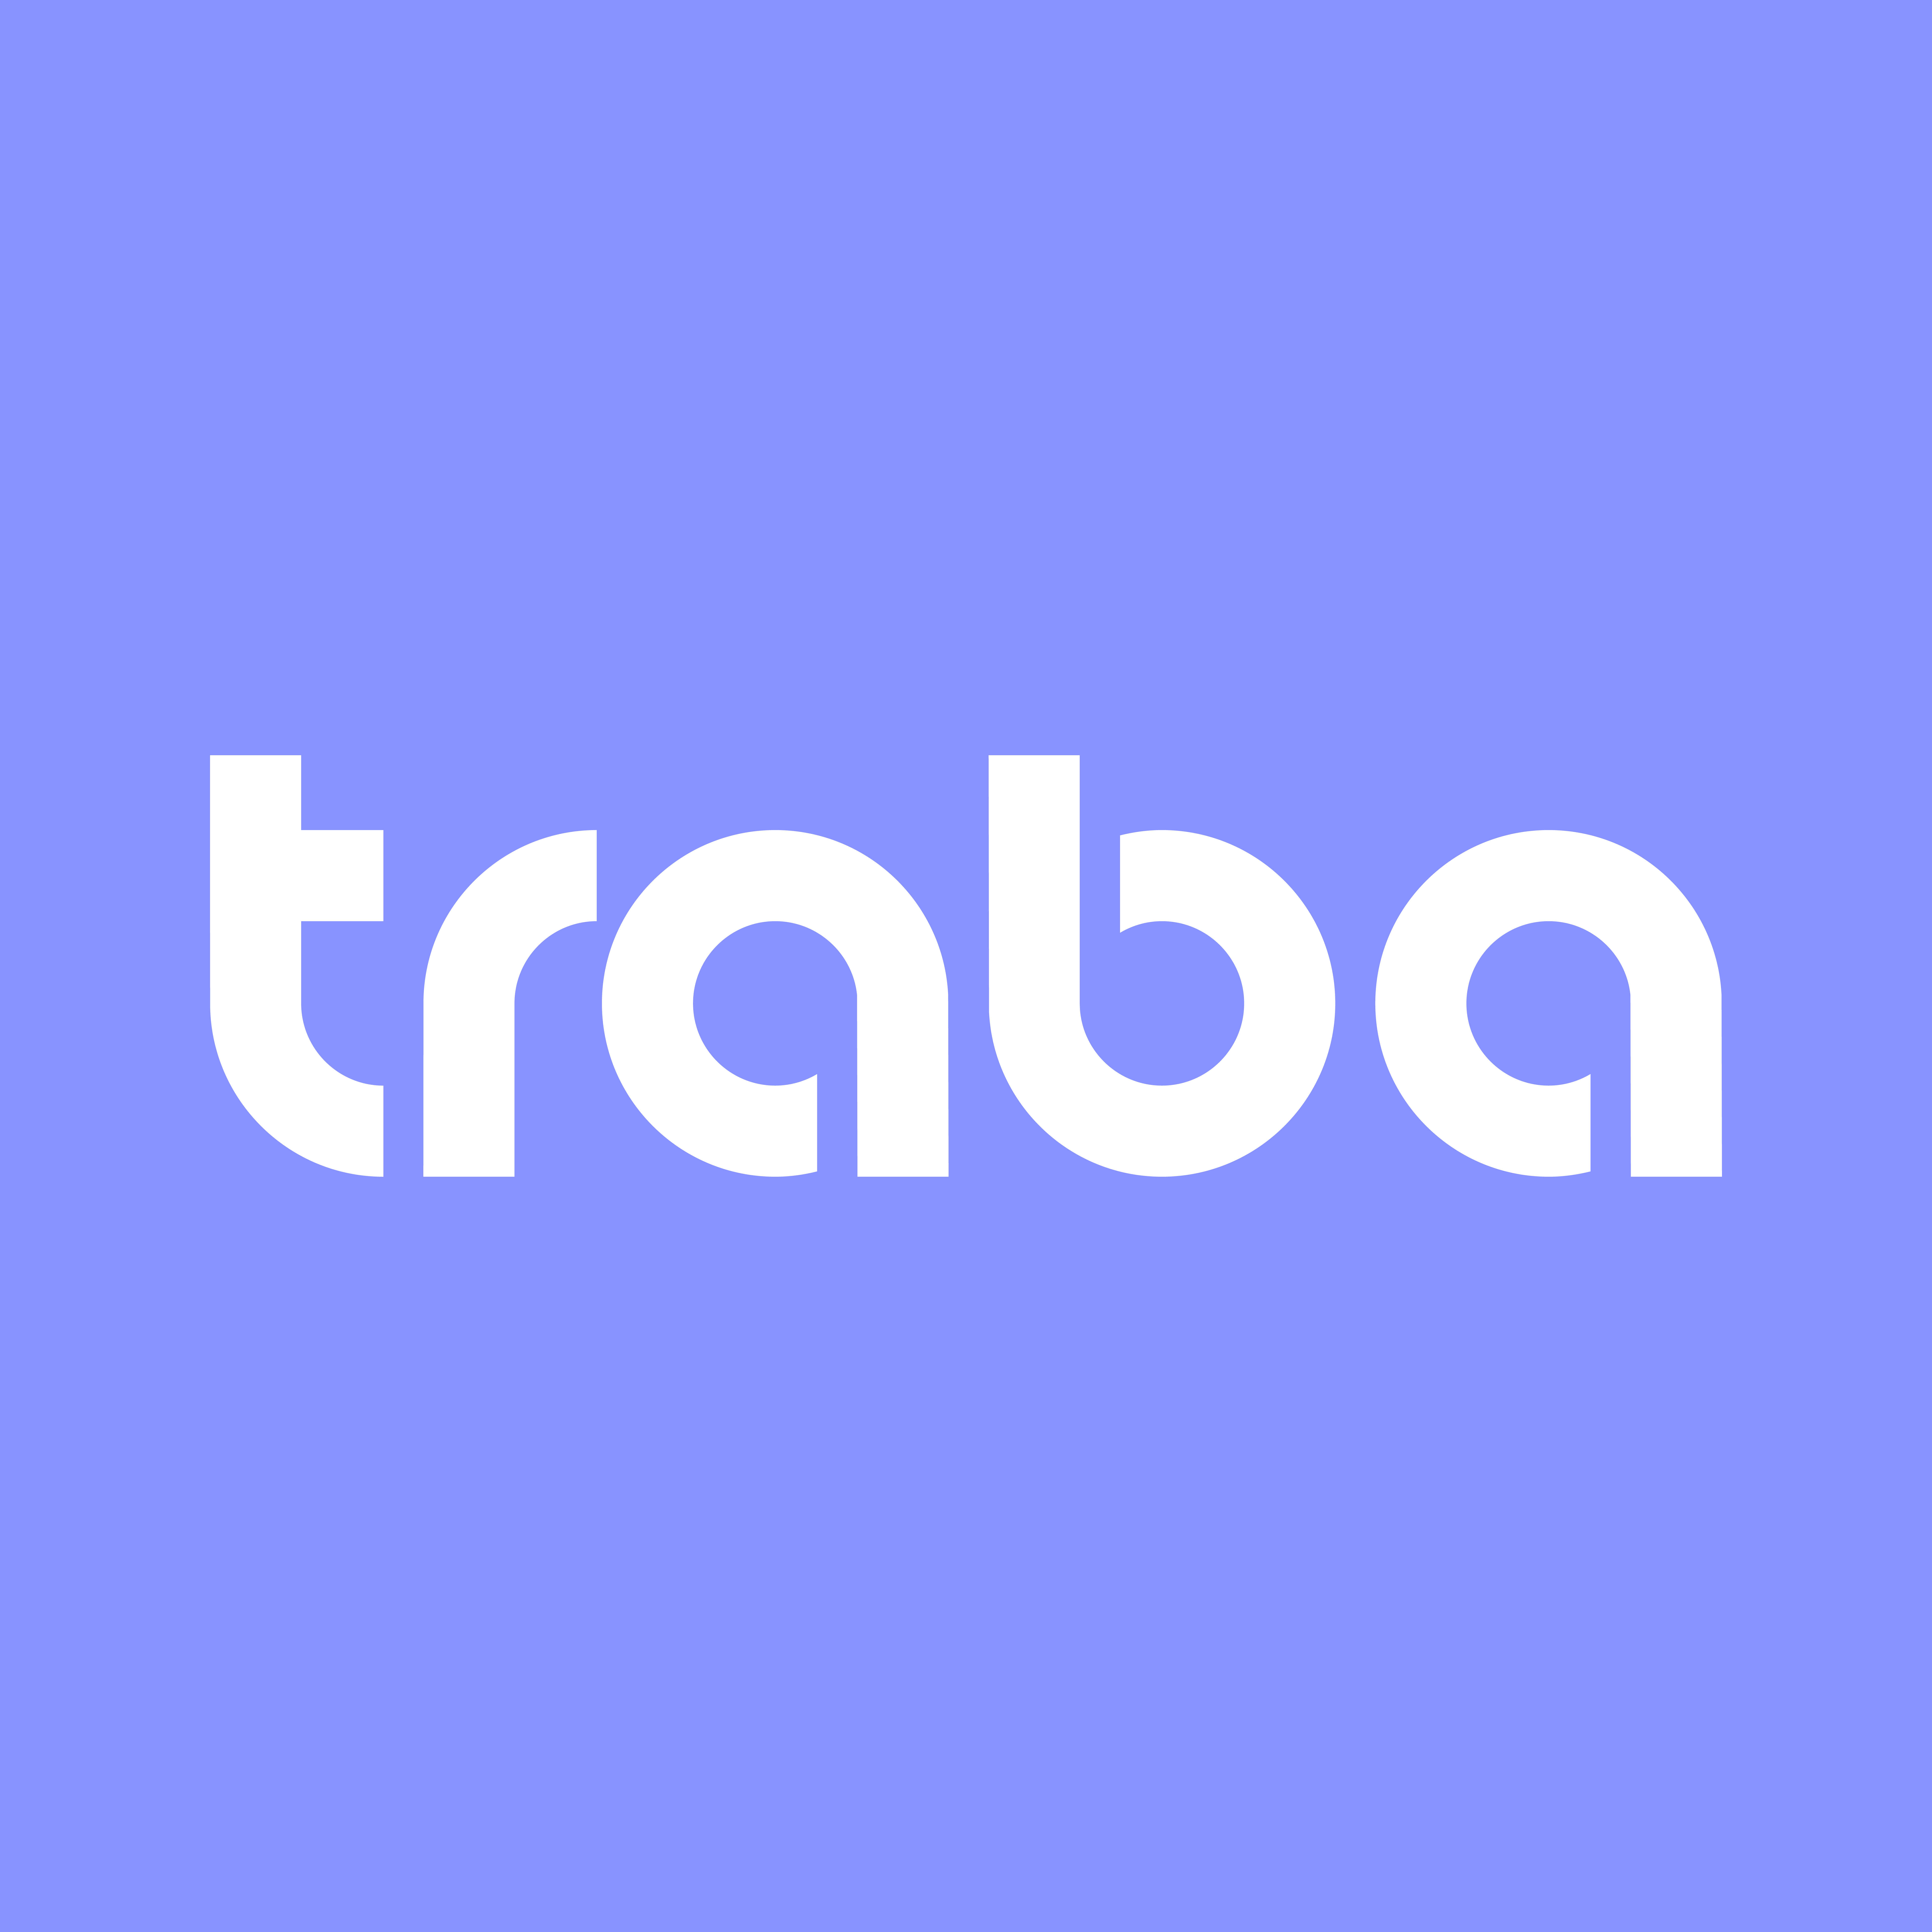 Traba startup company logo